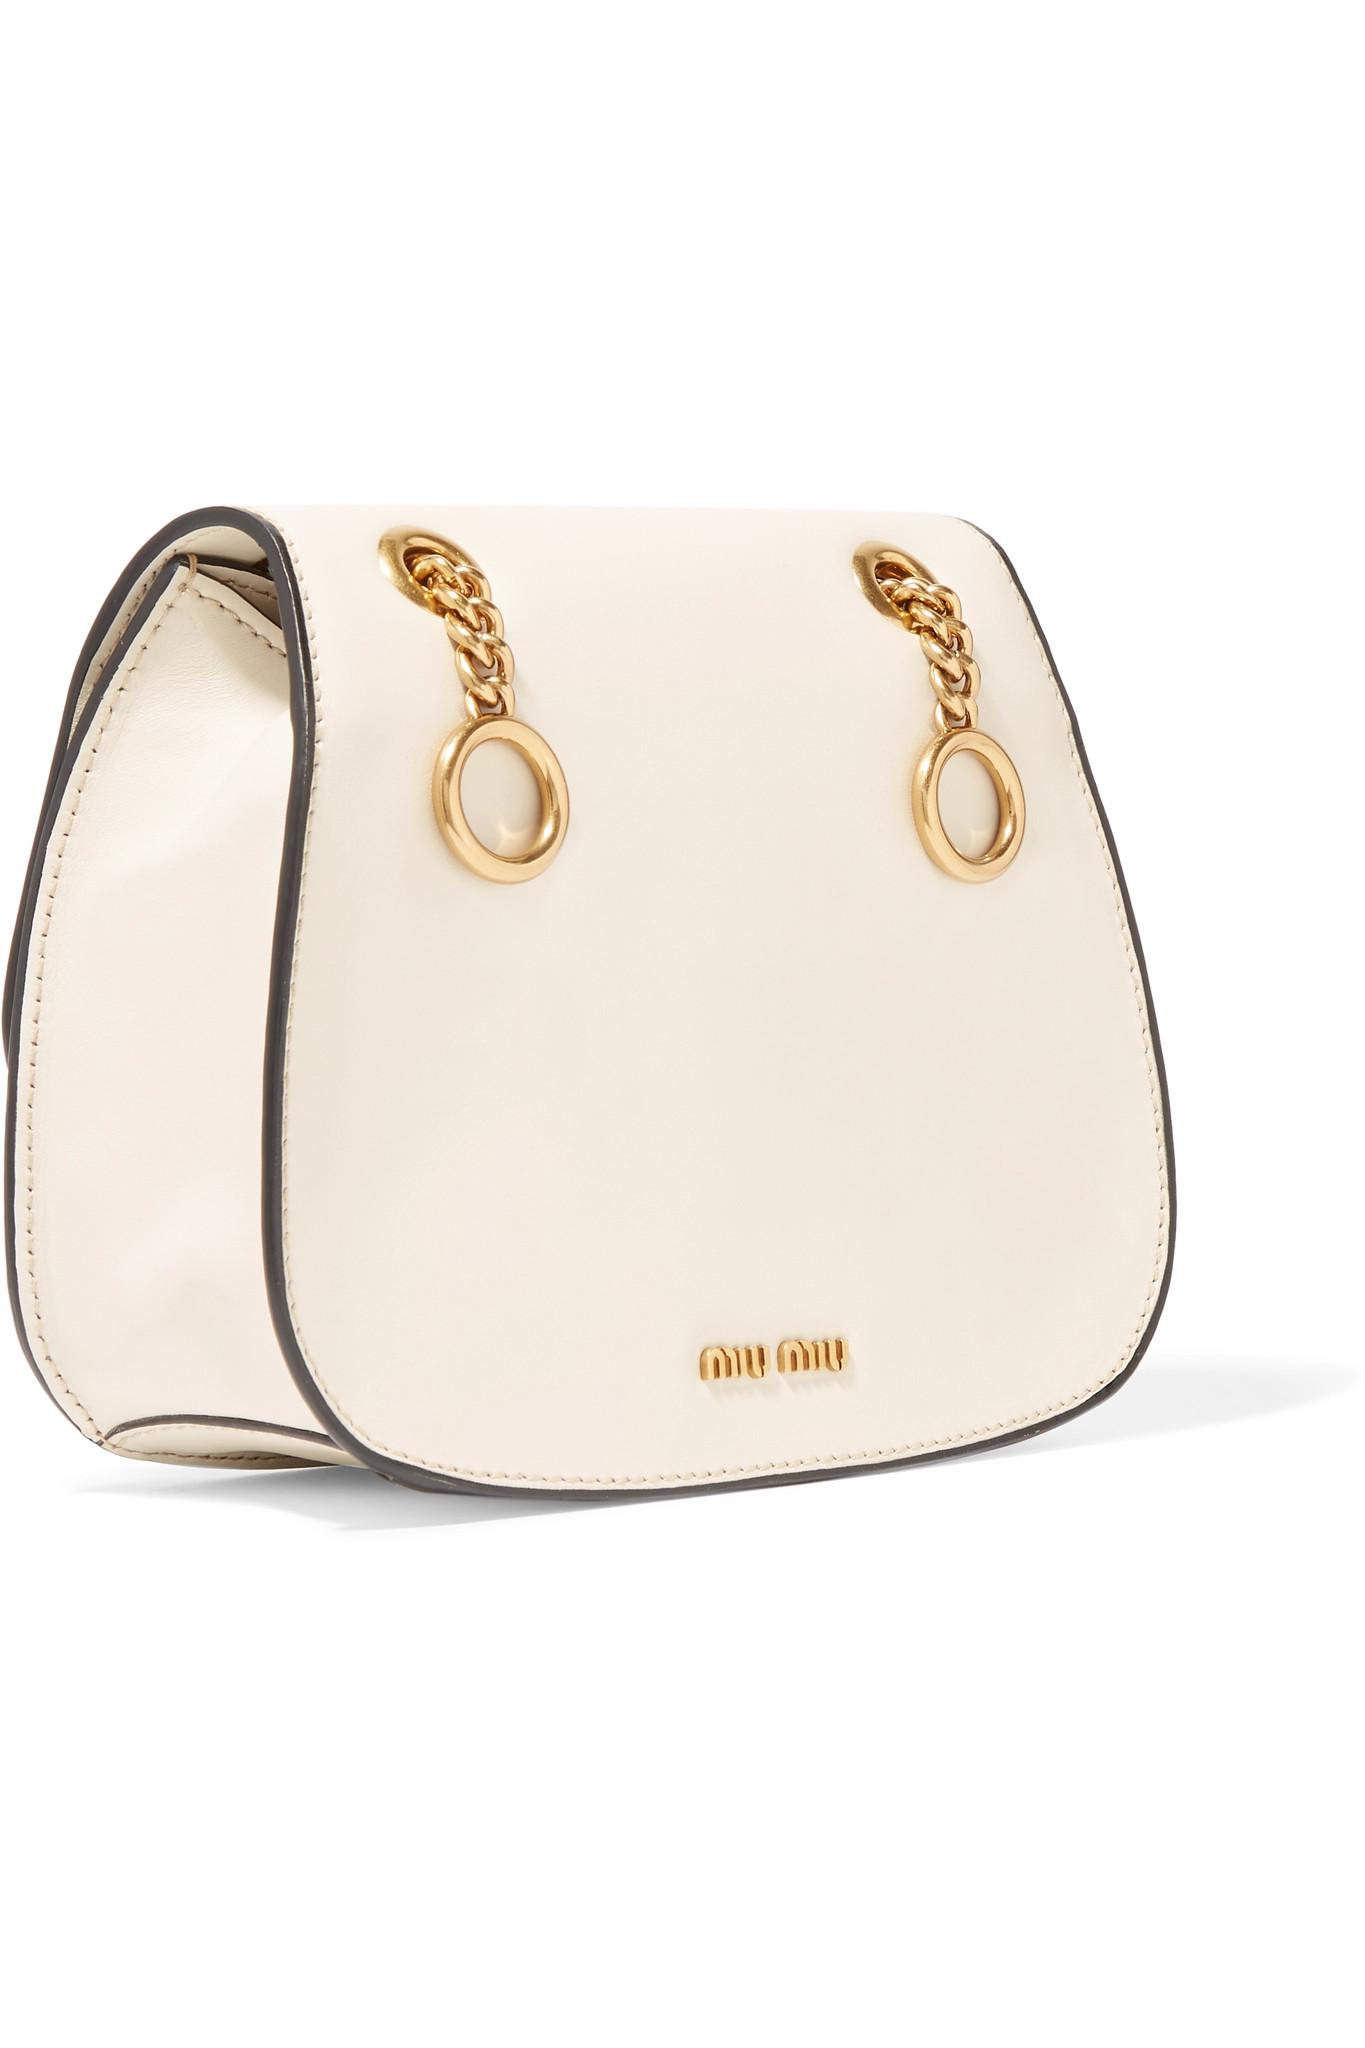 Miu Miu Dahlia Leather Shoulder Bag in White - Lyst